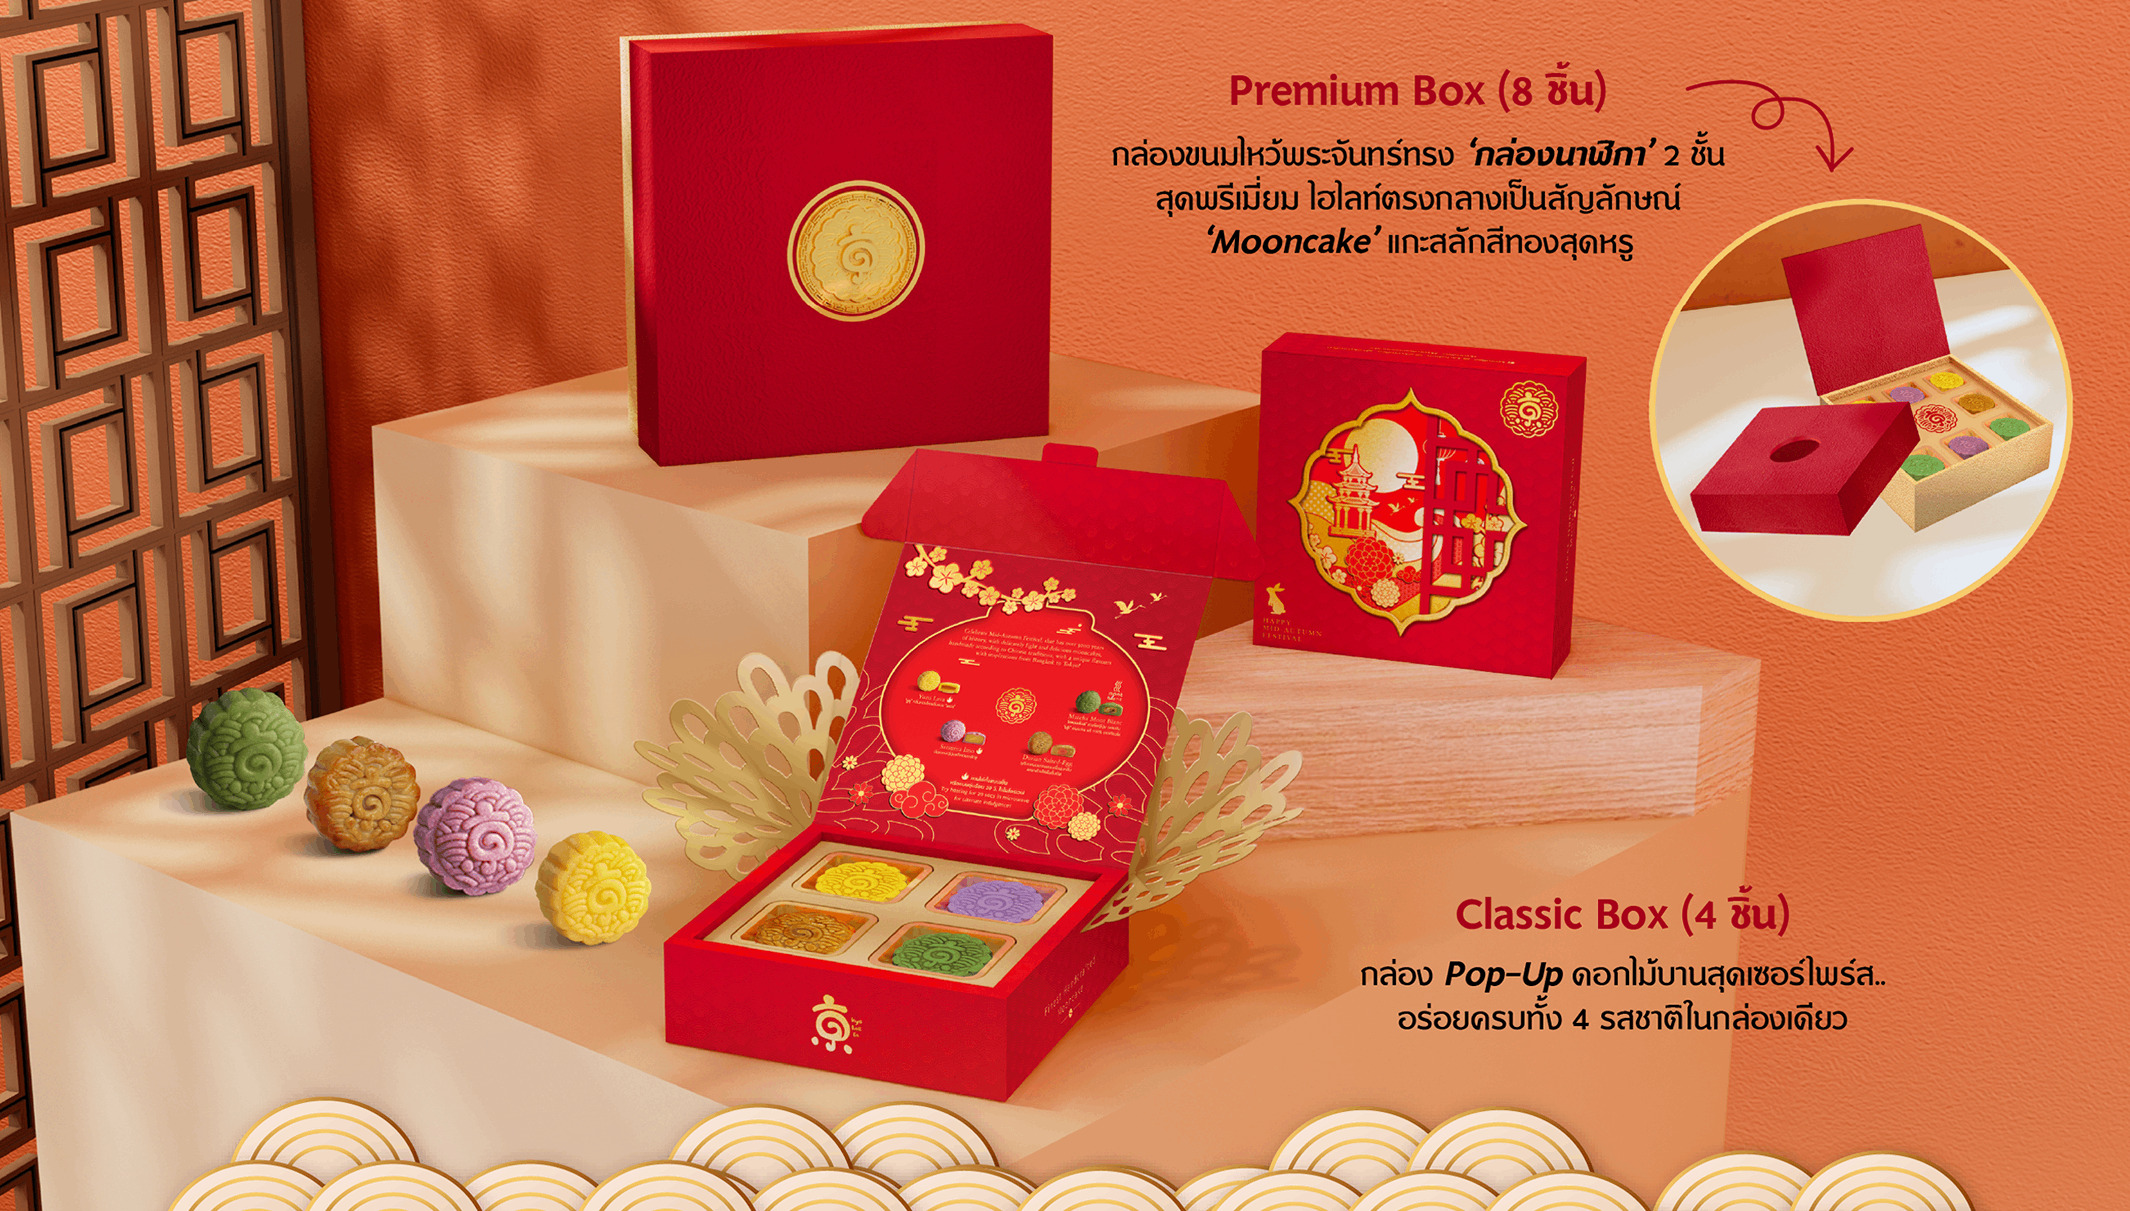 ขนมไหว้พระจันทร์ Premium Box (8 ชิ้น) และ Classic Box (4 ชิ้น)